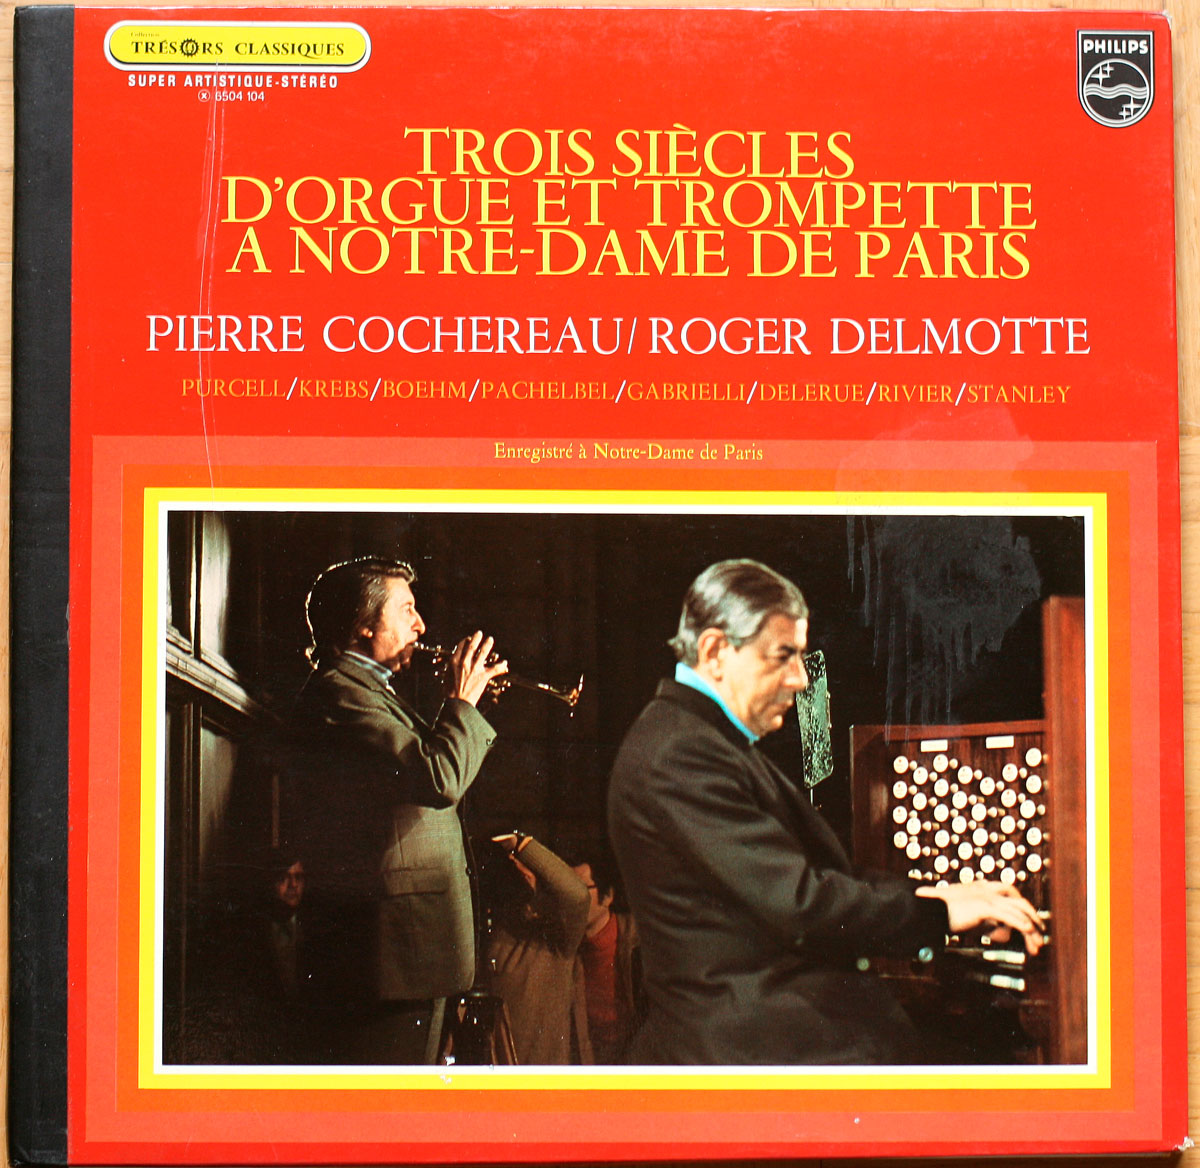 Trois siècles d'orgue et trompette à Notre-Dame de Paris • Philips 6504 104 • Pierre Cochereau • Roger Delmotte